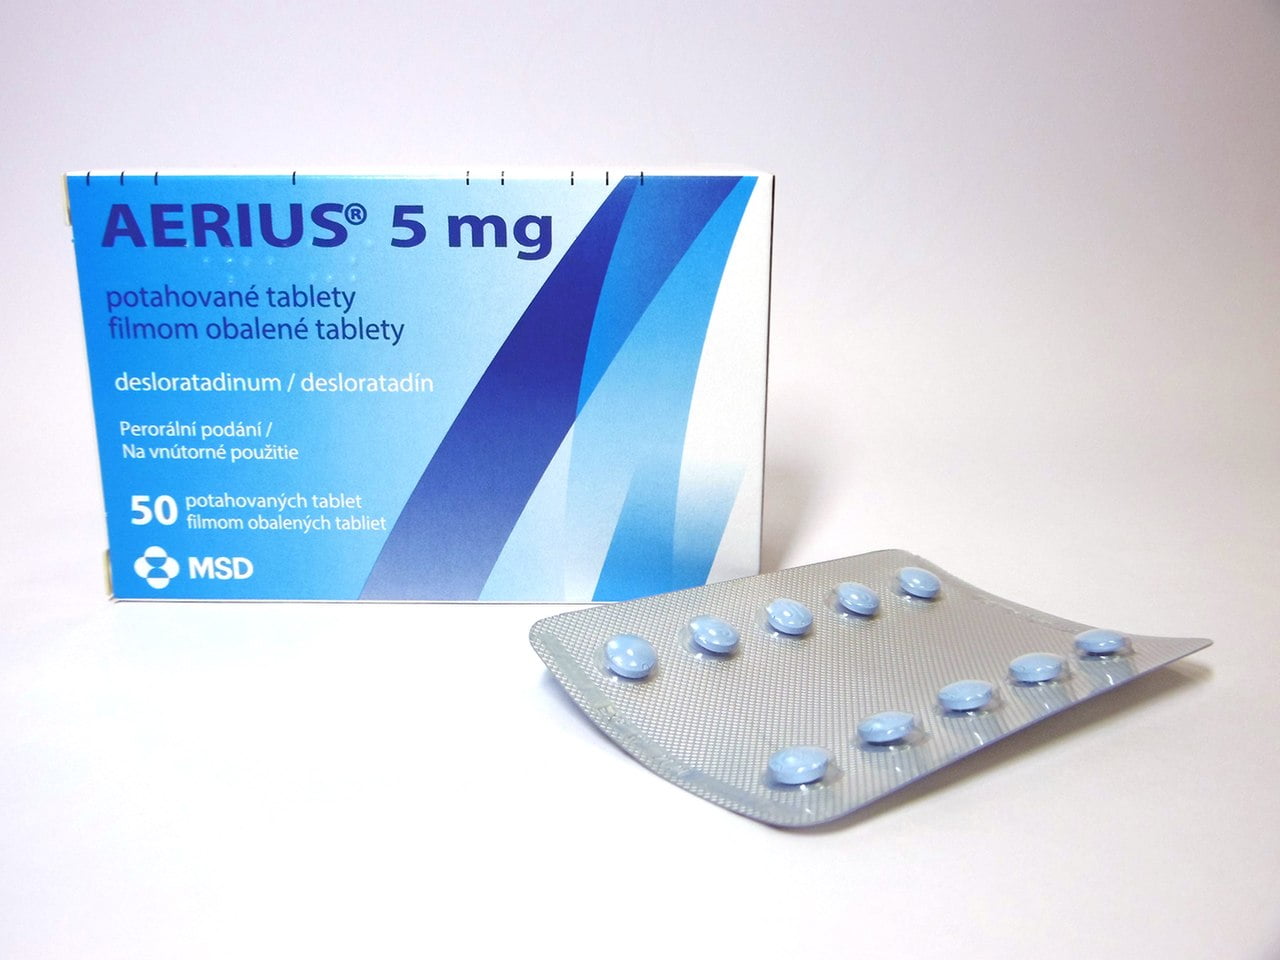  دواء أيريوس Aerius لعلاج الحساسية